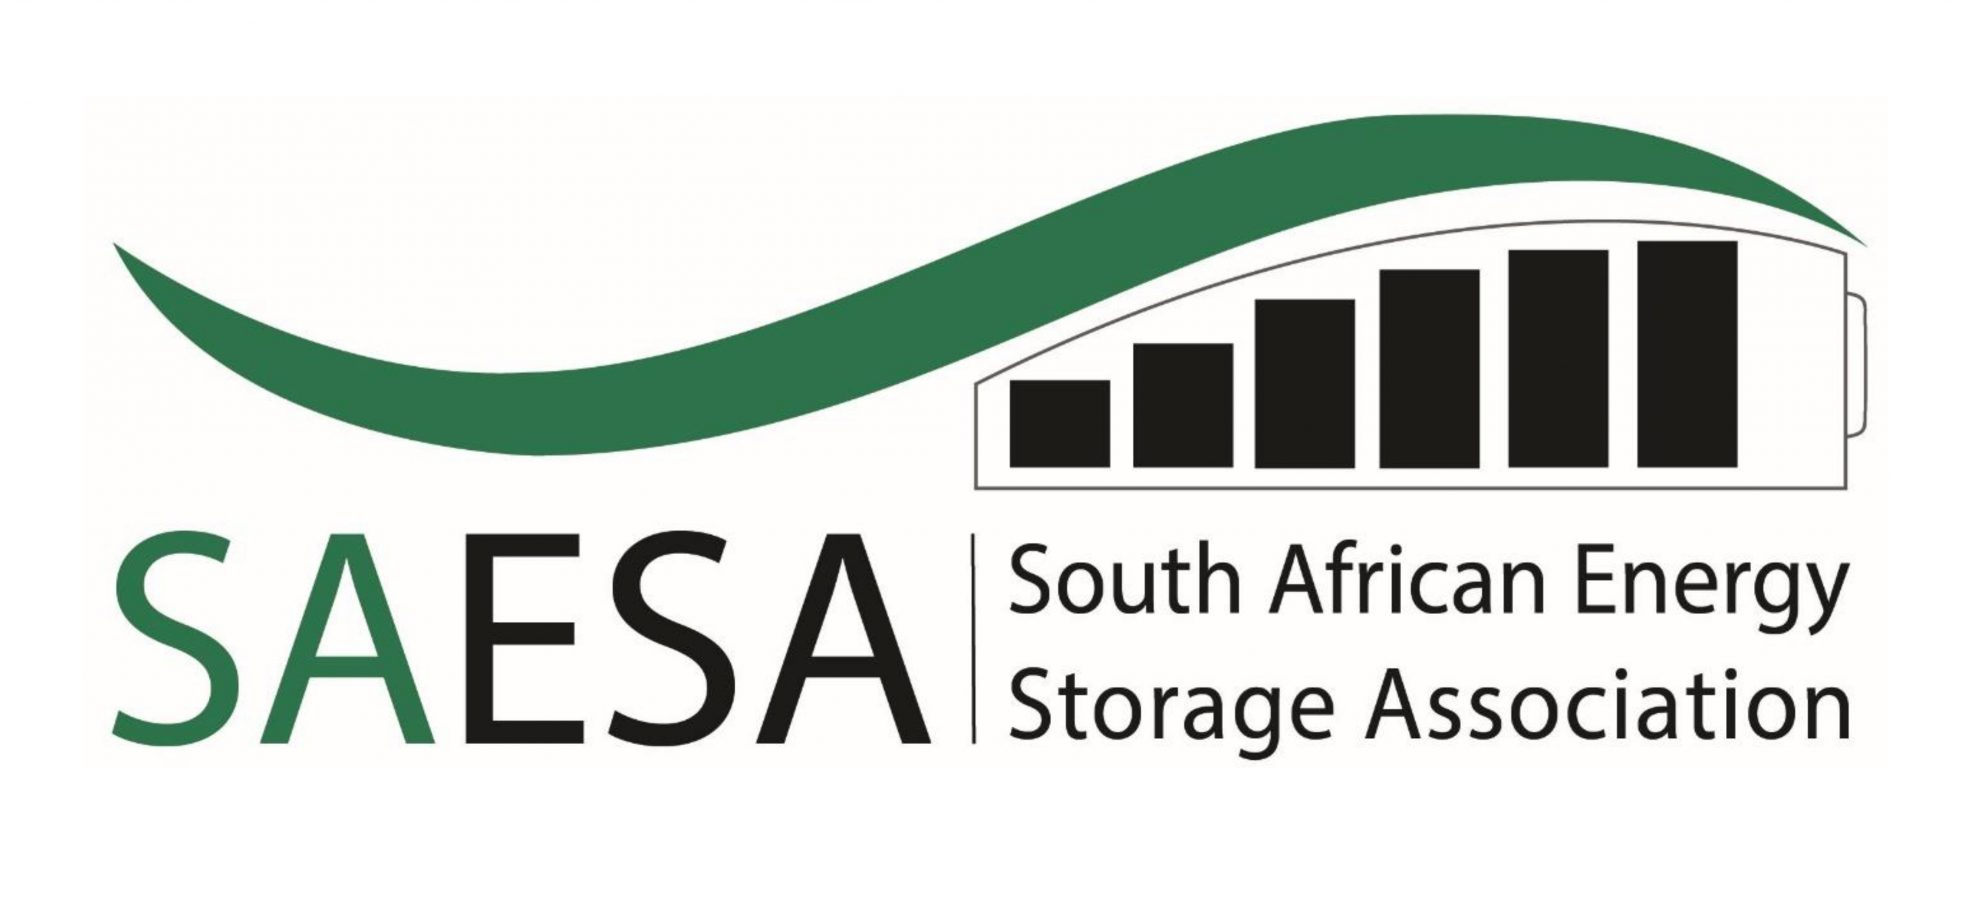 SAESA-logo-large-1980x908